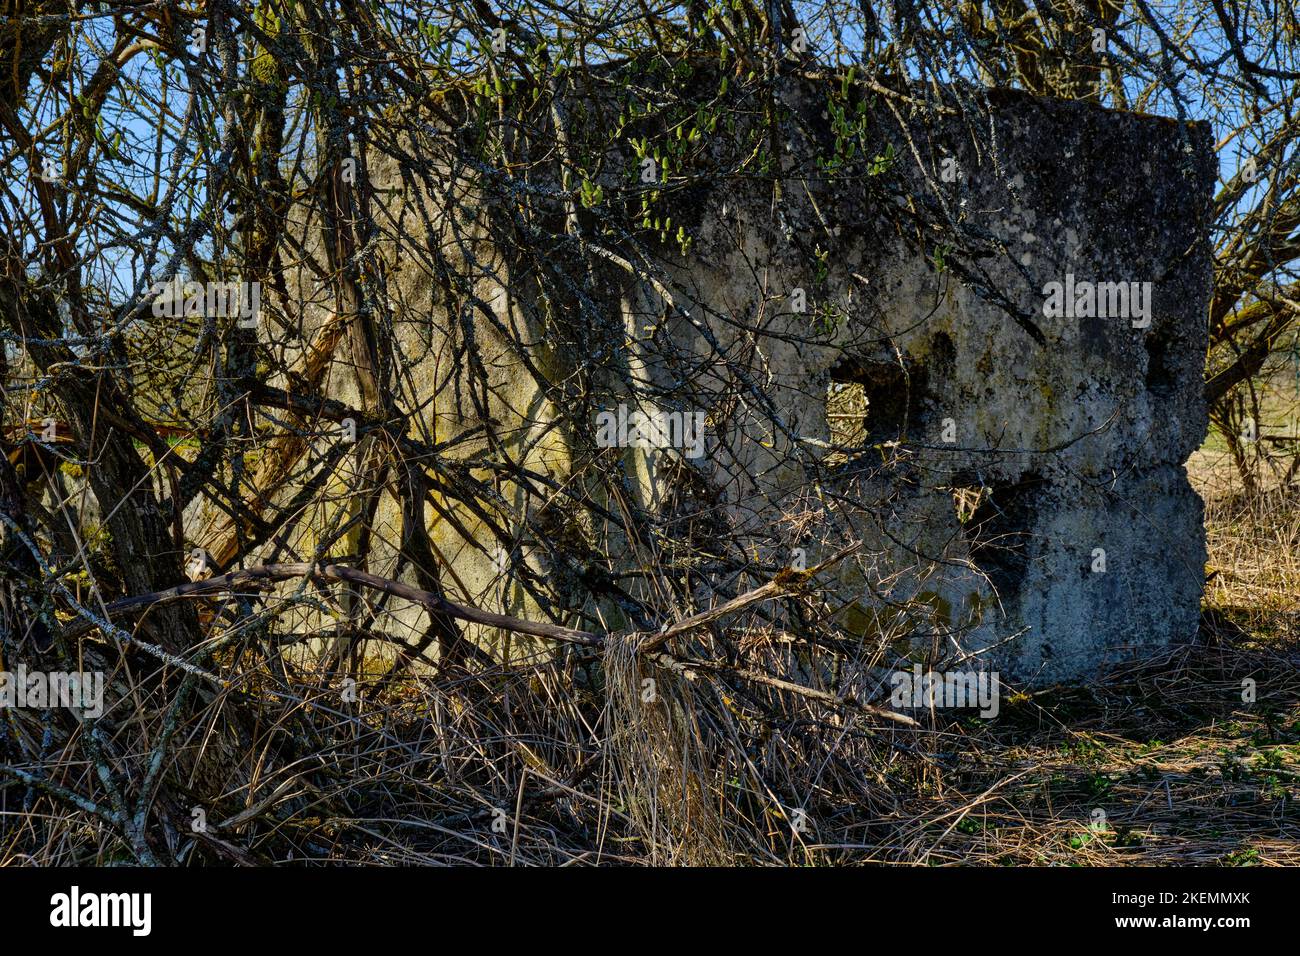 Wuchernde silvestre vegetation und verfallene Gebäudestrukturen, Wüstung Dorf Gruorn, ehemaliger Truppenübungsplatz Gutsbezirk Münsingen, Biosphärenreserva Foto de stock